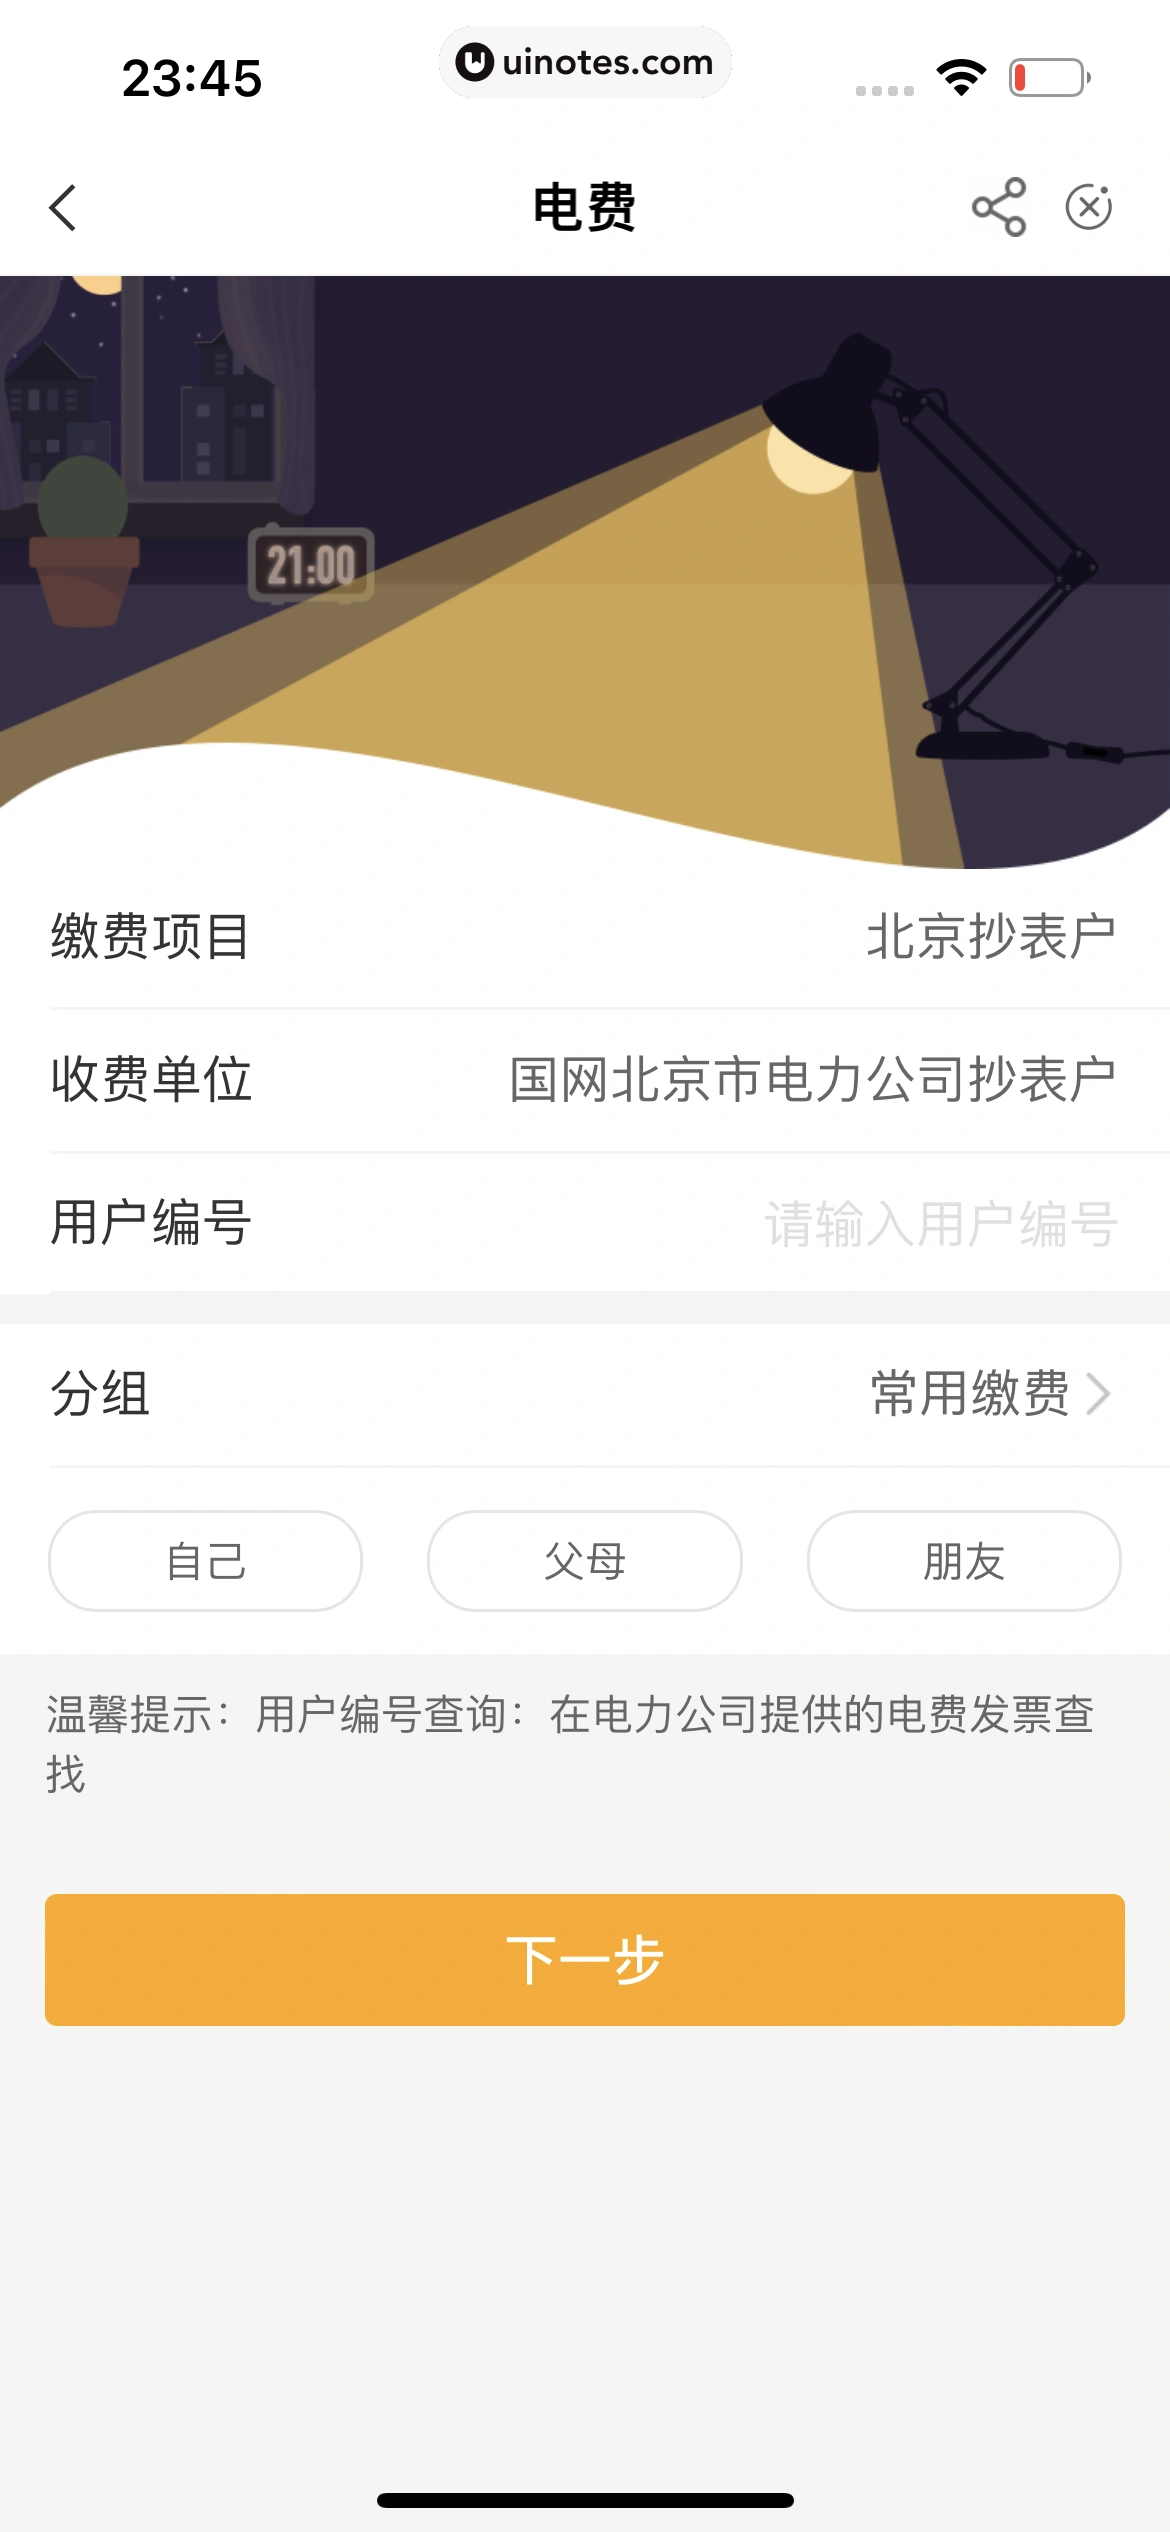 中国农业银行 App 截图 156 - UI Notes